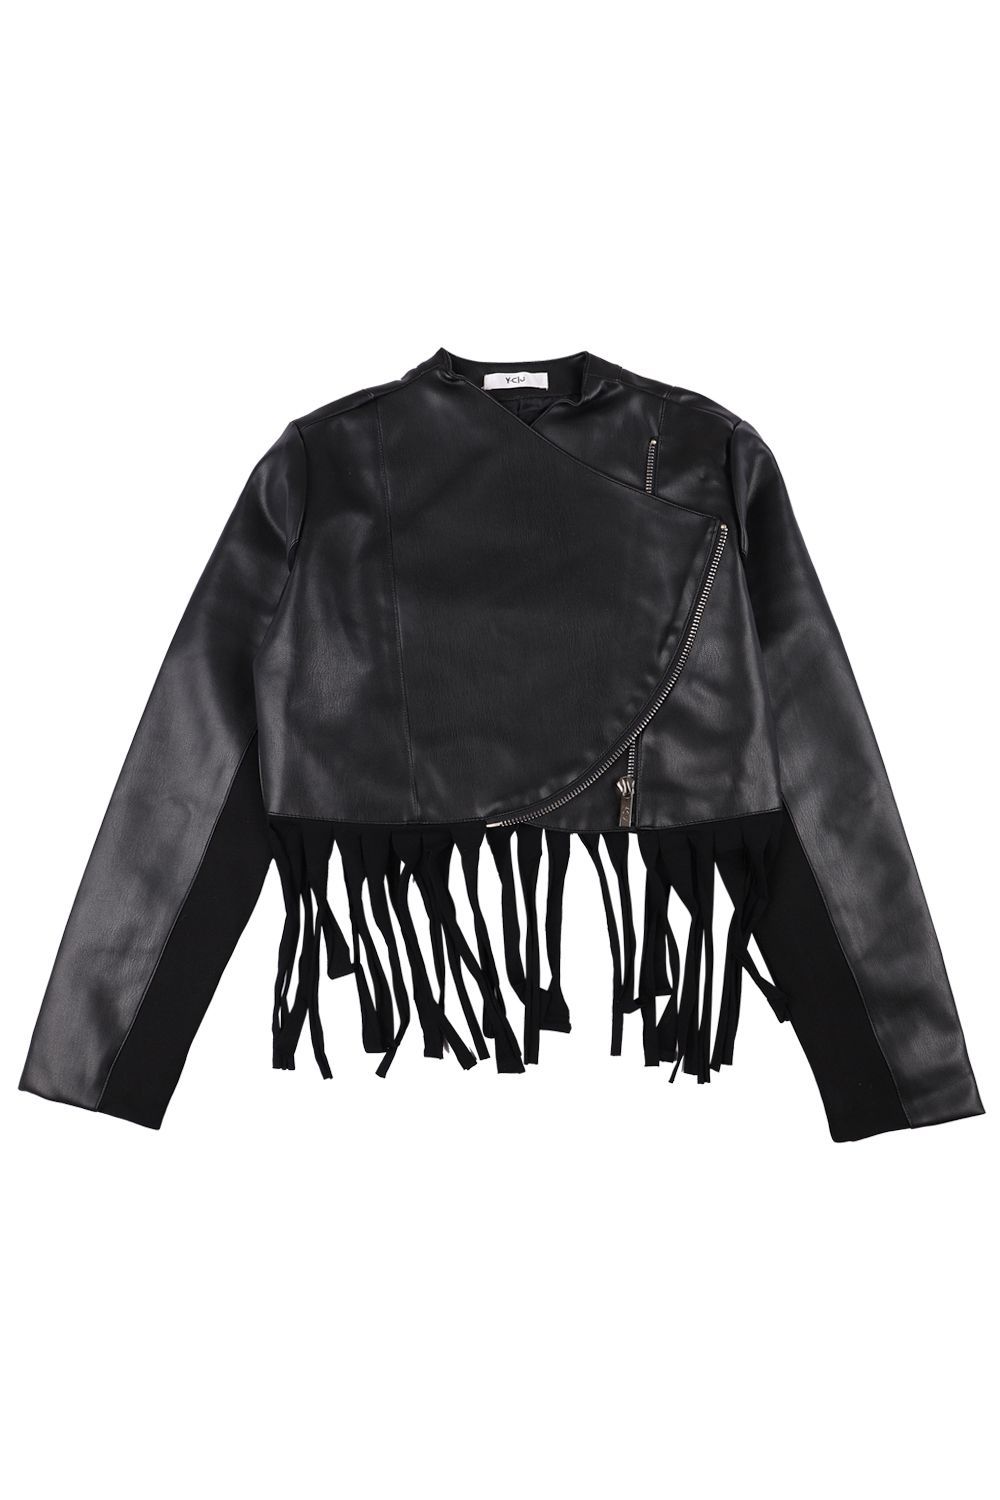 Куртка Y-clu', размер 140, цвет черный Y12160 - фото 2